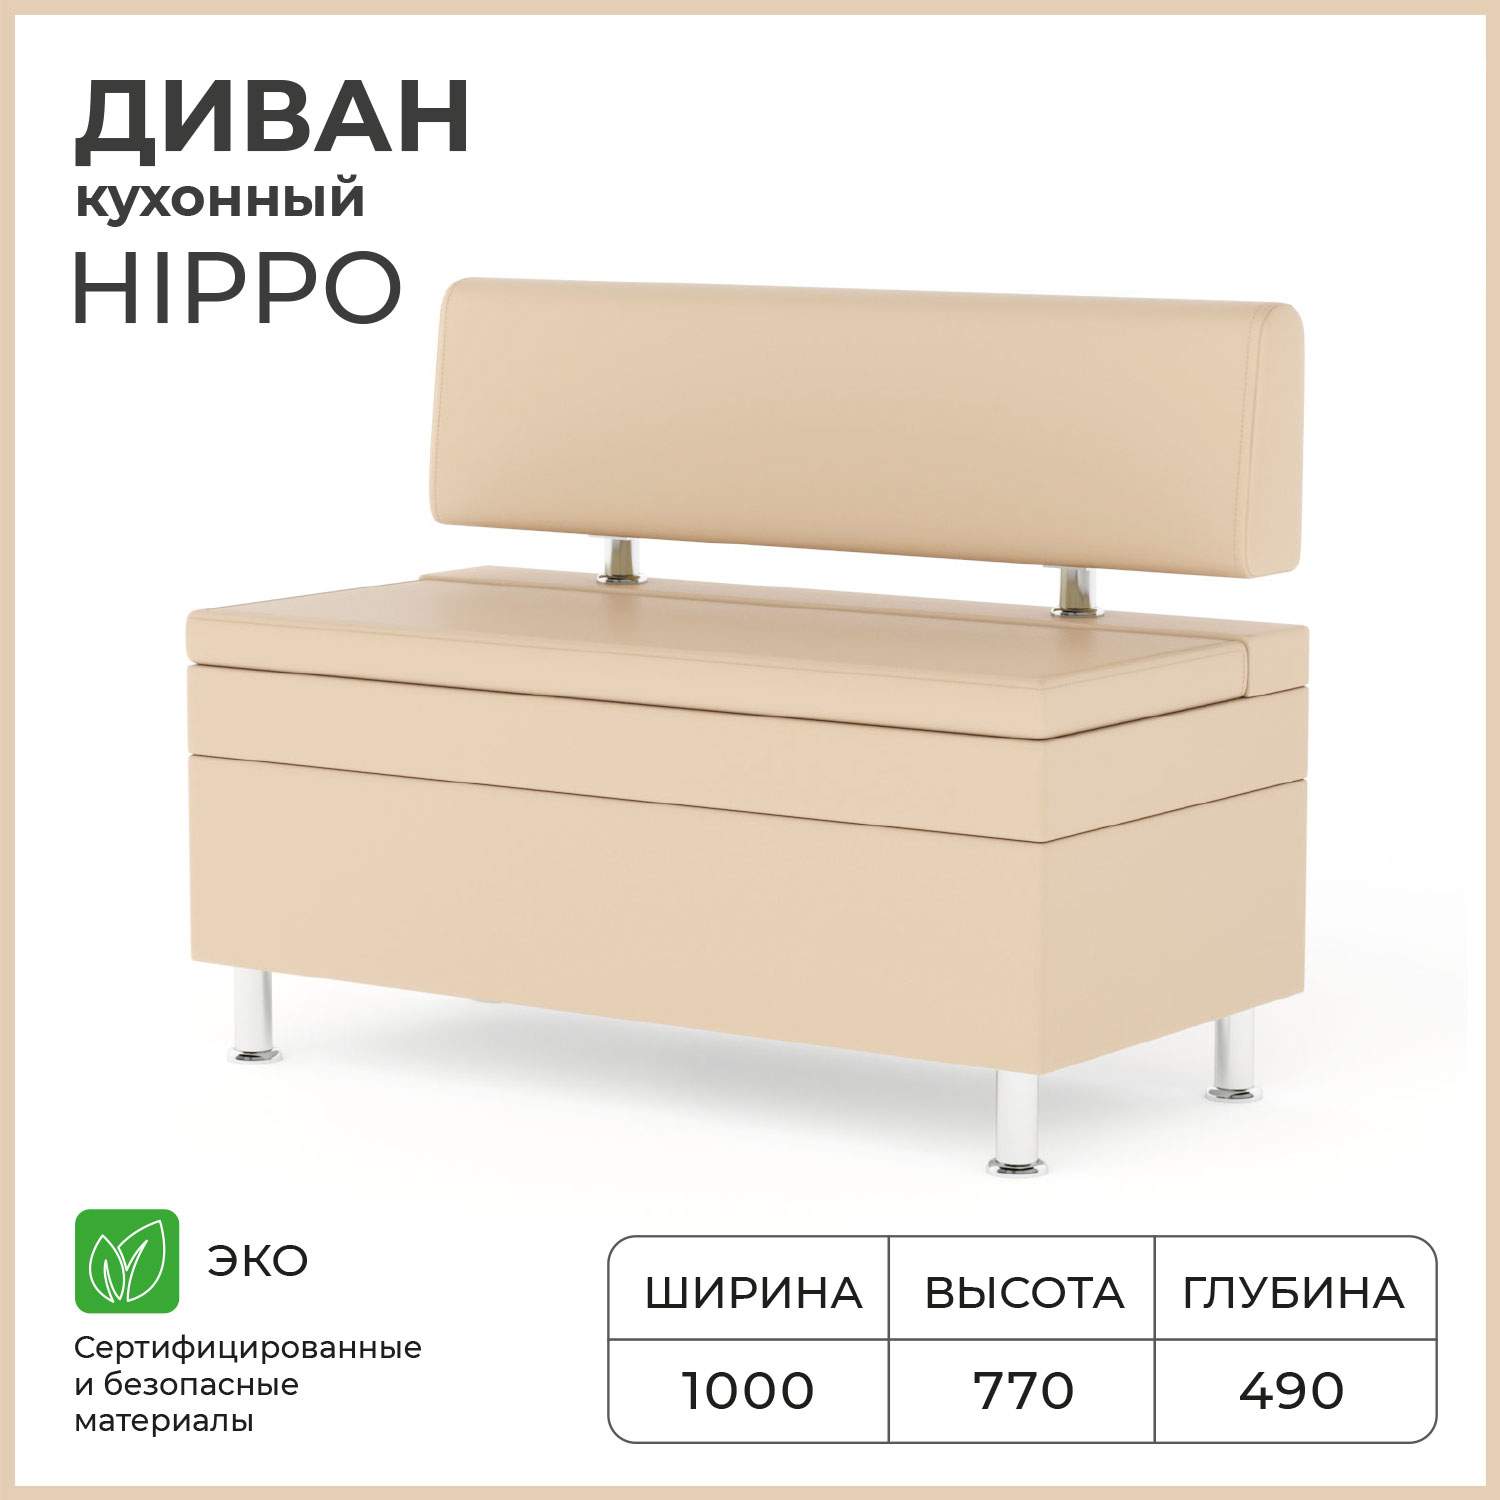 Диван кухонный Bruno Hippo 1.0 м - купить в Москве, цены на Мегамаркет | 600006853899